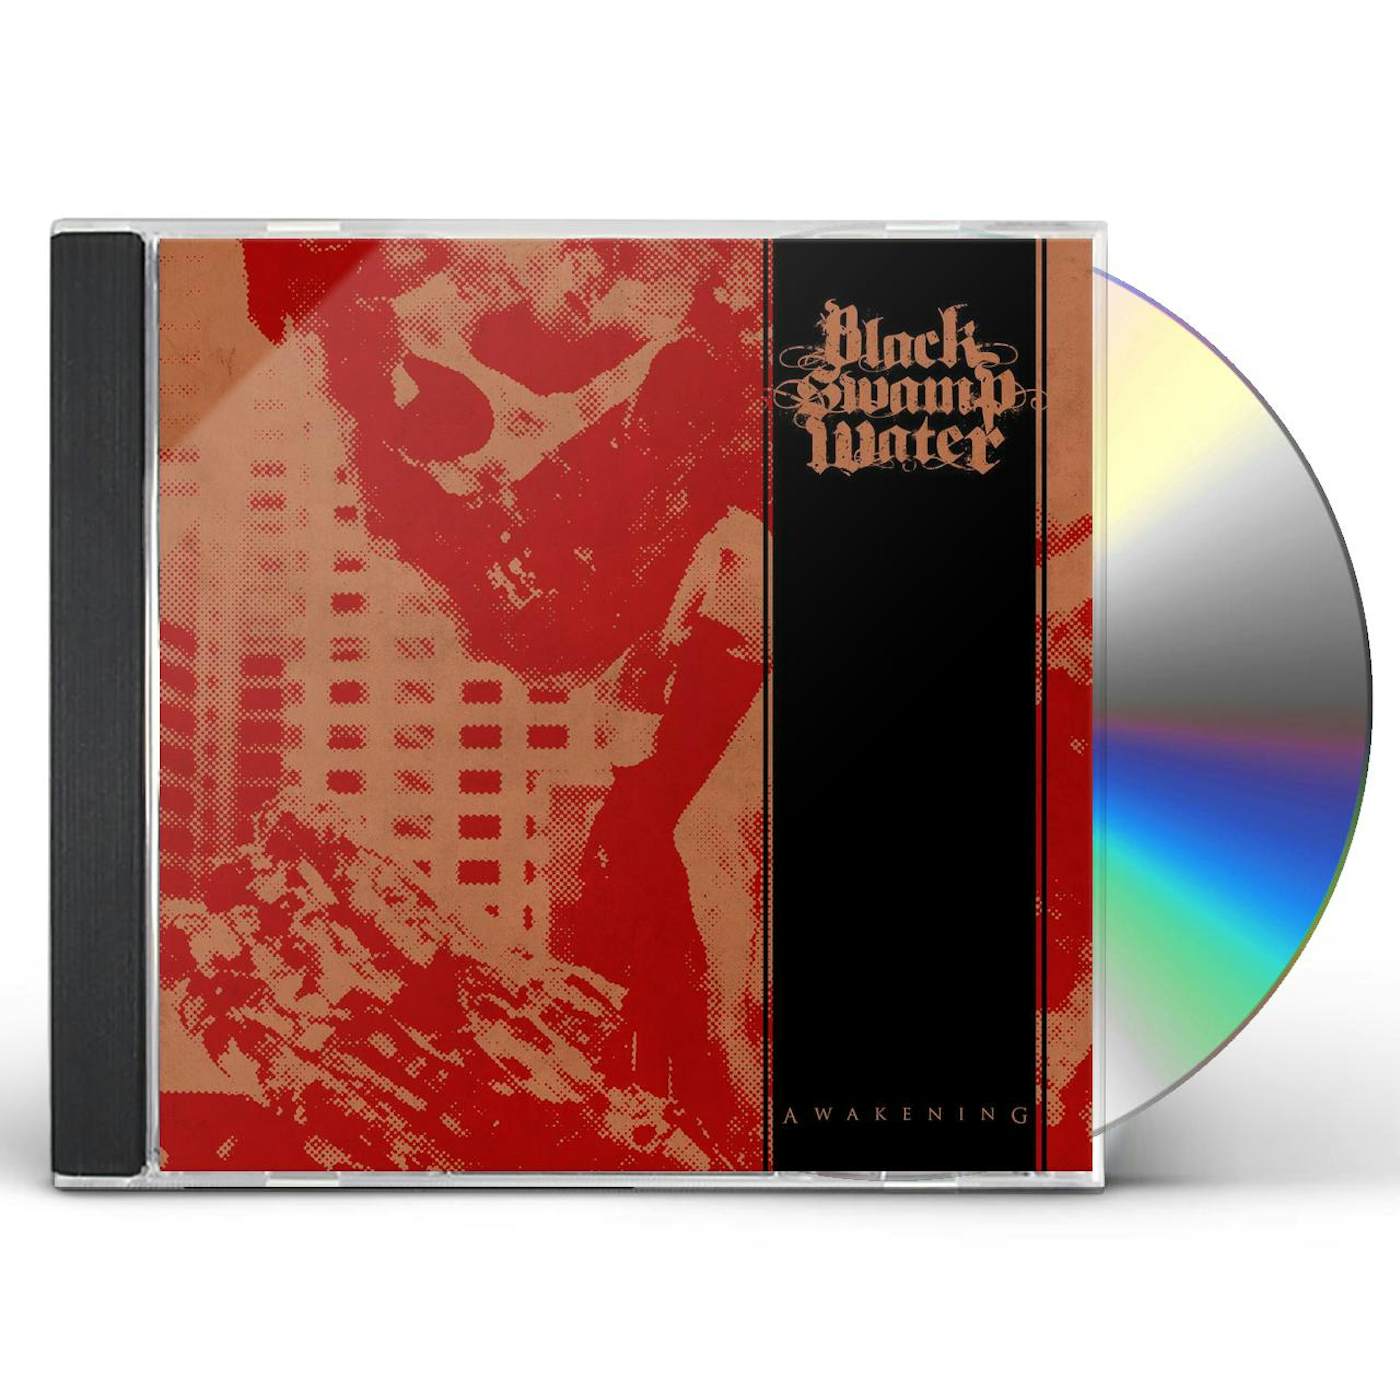 Black Swamp Water Awakening CD